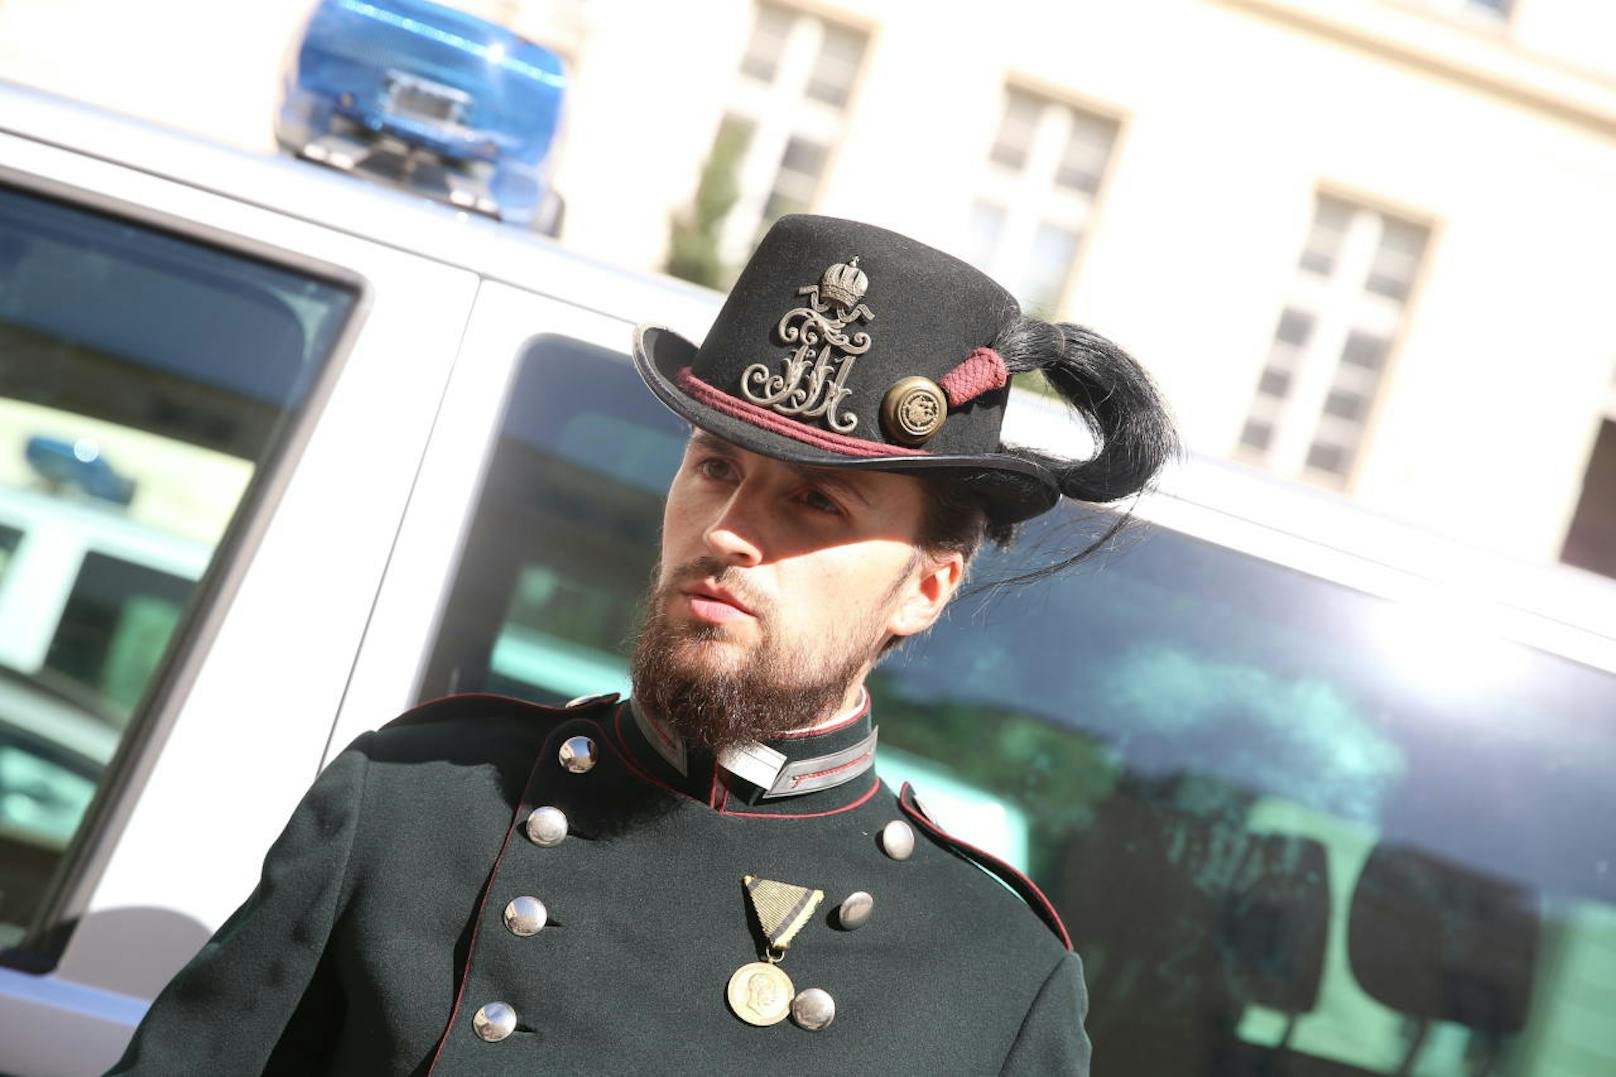 "Die Uniform ist ungewohnt beim Anziehen, aber trägt sich recht gut", so Polizeischüler Dusko (30).